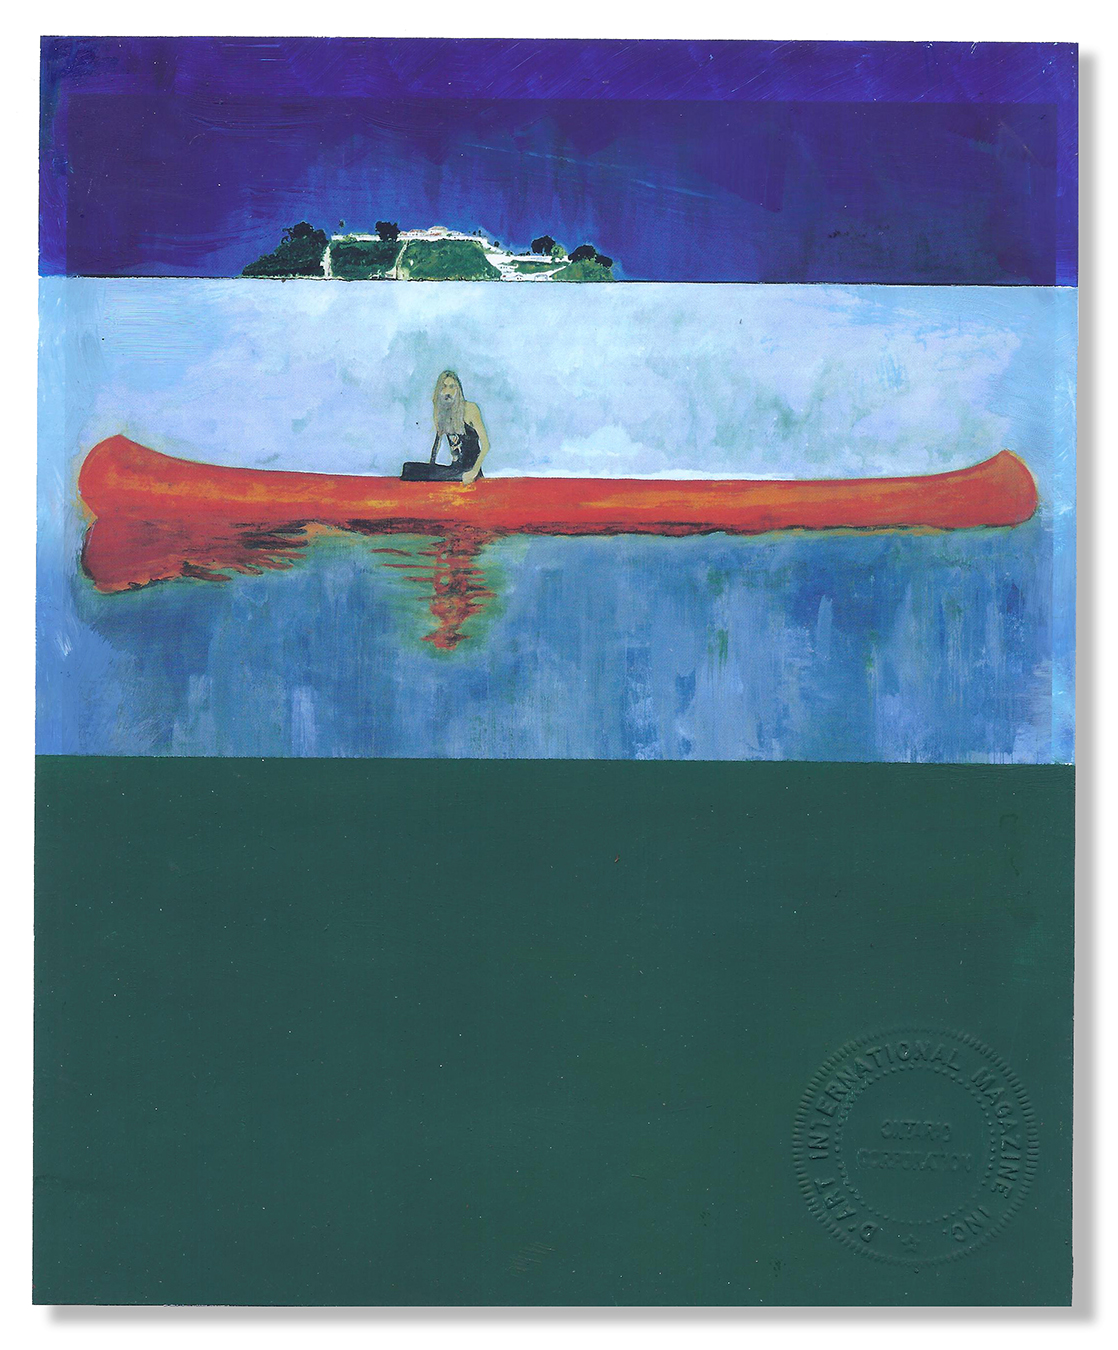 Peter Doig's Red Canoe